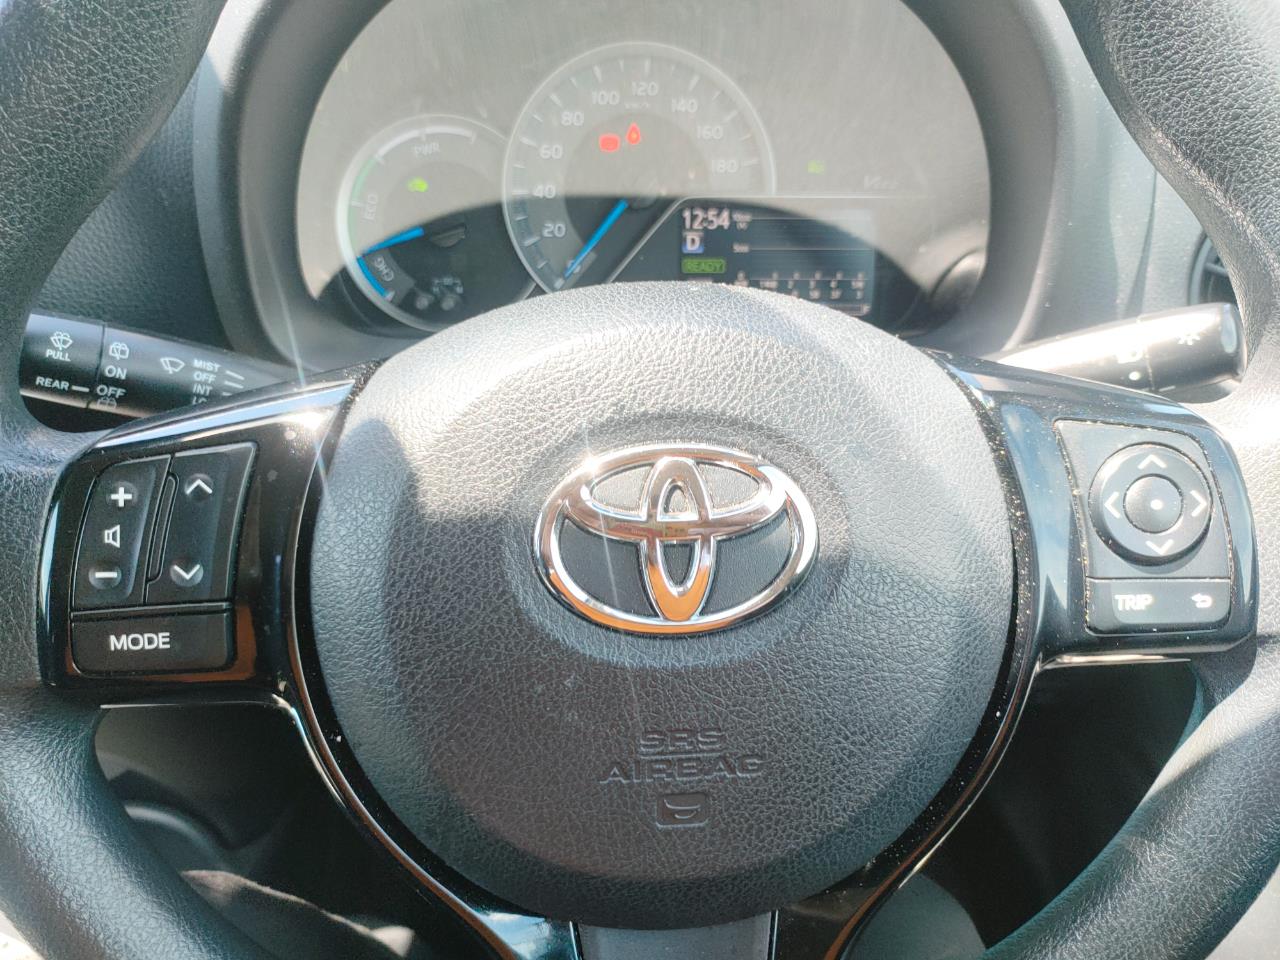 2017 Toyota Vitz